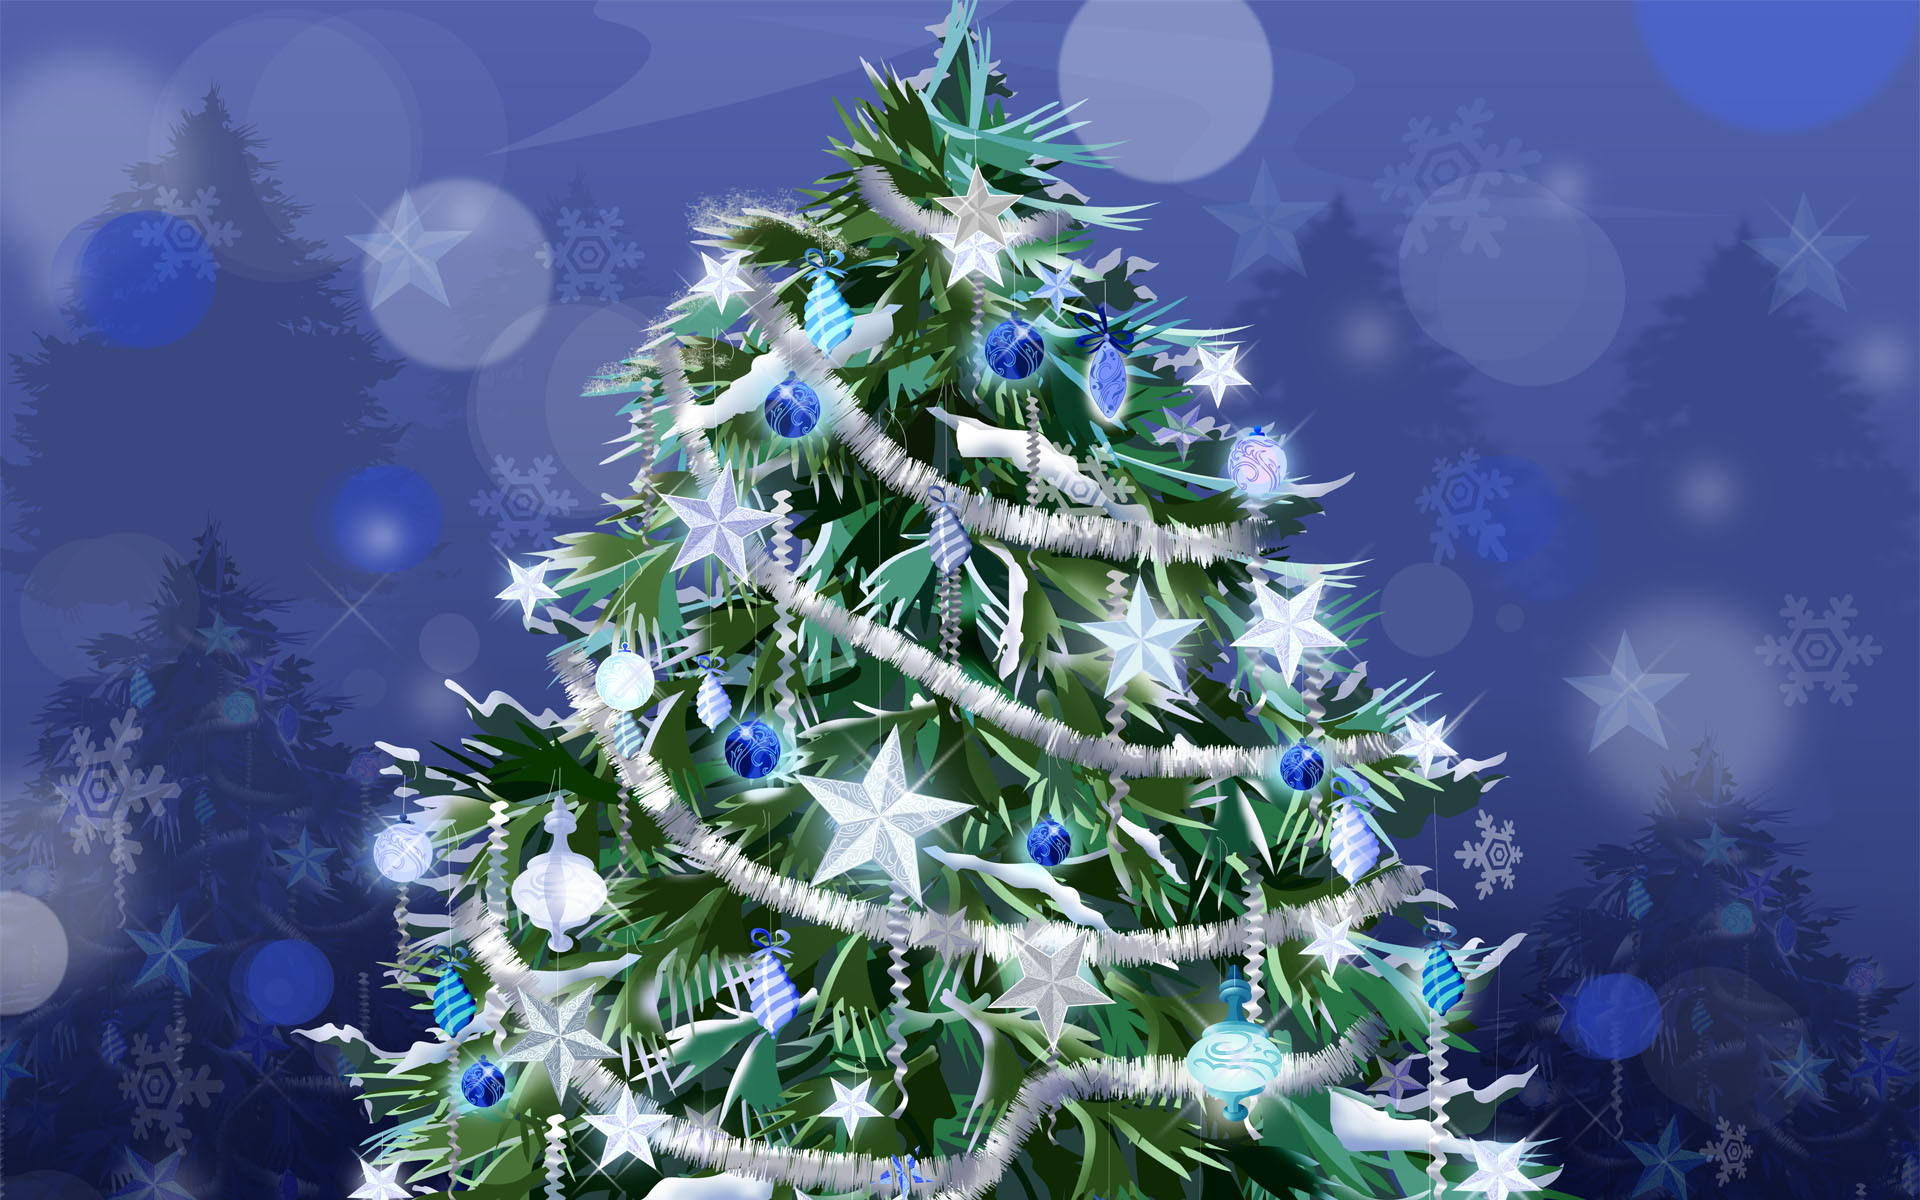 Sfondi Natalizi 1366x768.Holiday Tree New Year Desktop Wallpapers 1366x768